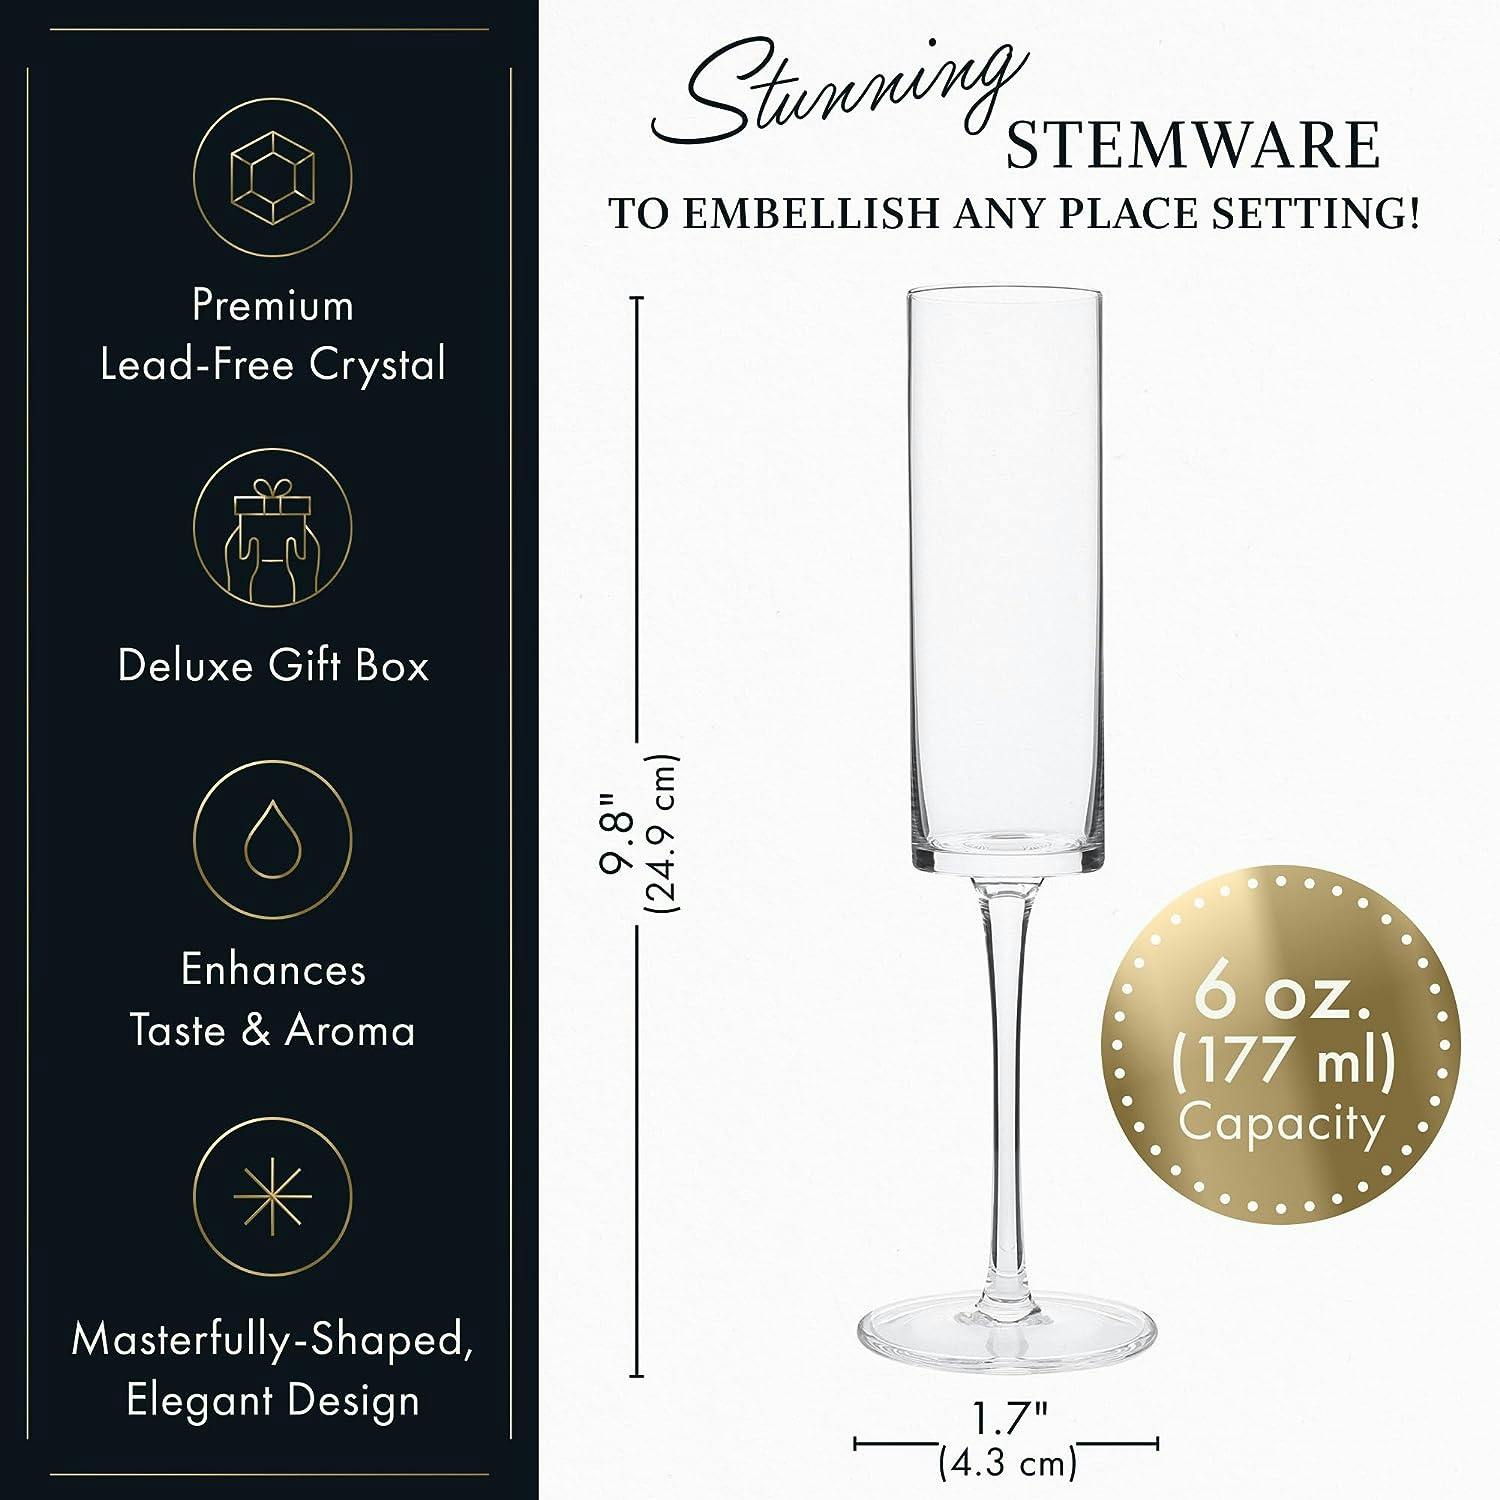 Elegant Crystal Champagne Flutes Set of 4 - Lead-Free, 6oz, Modern Design